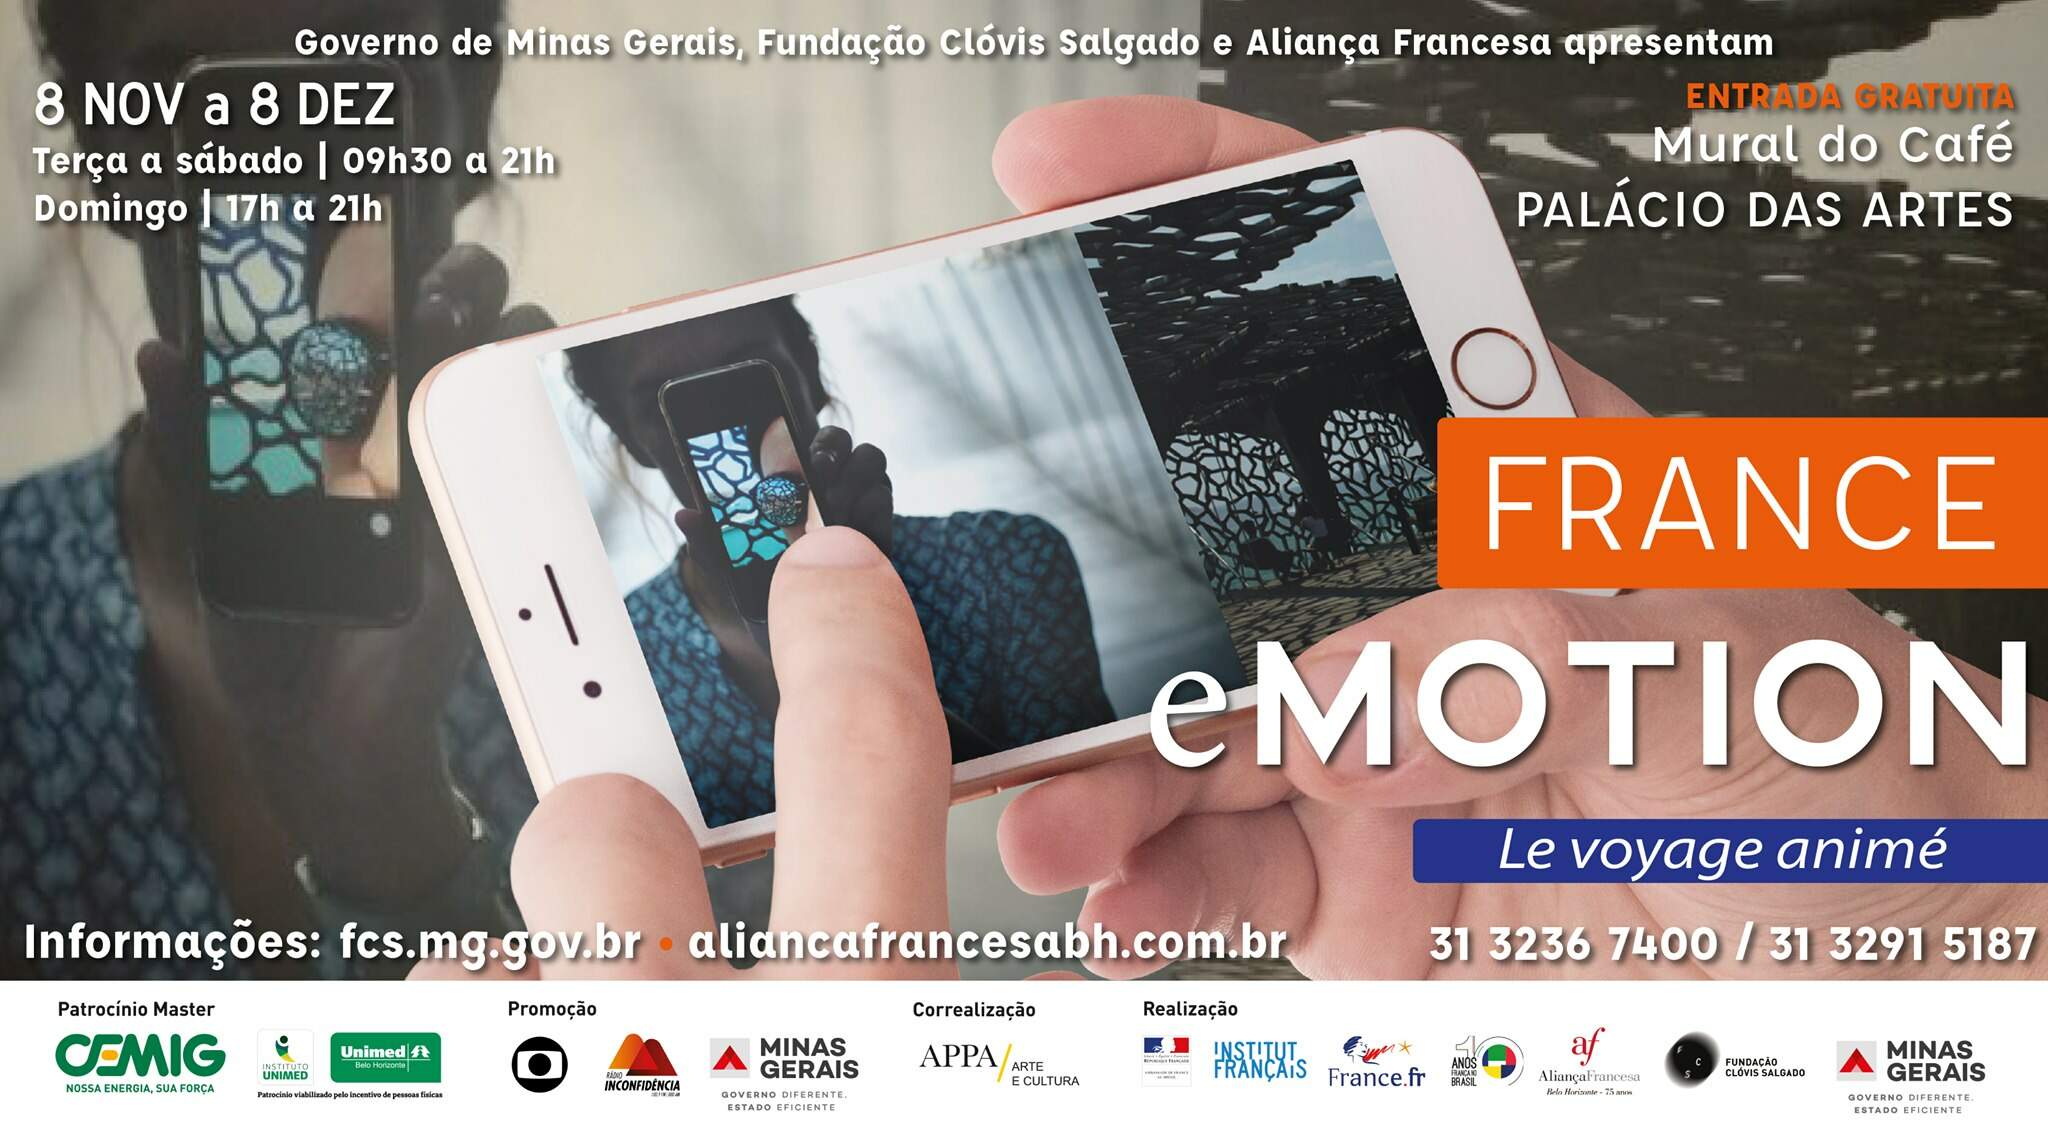 Exposição France eMotion - Em celebração aos “10 anos da França no Brasil”